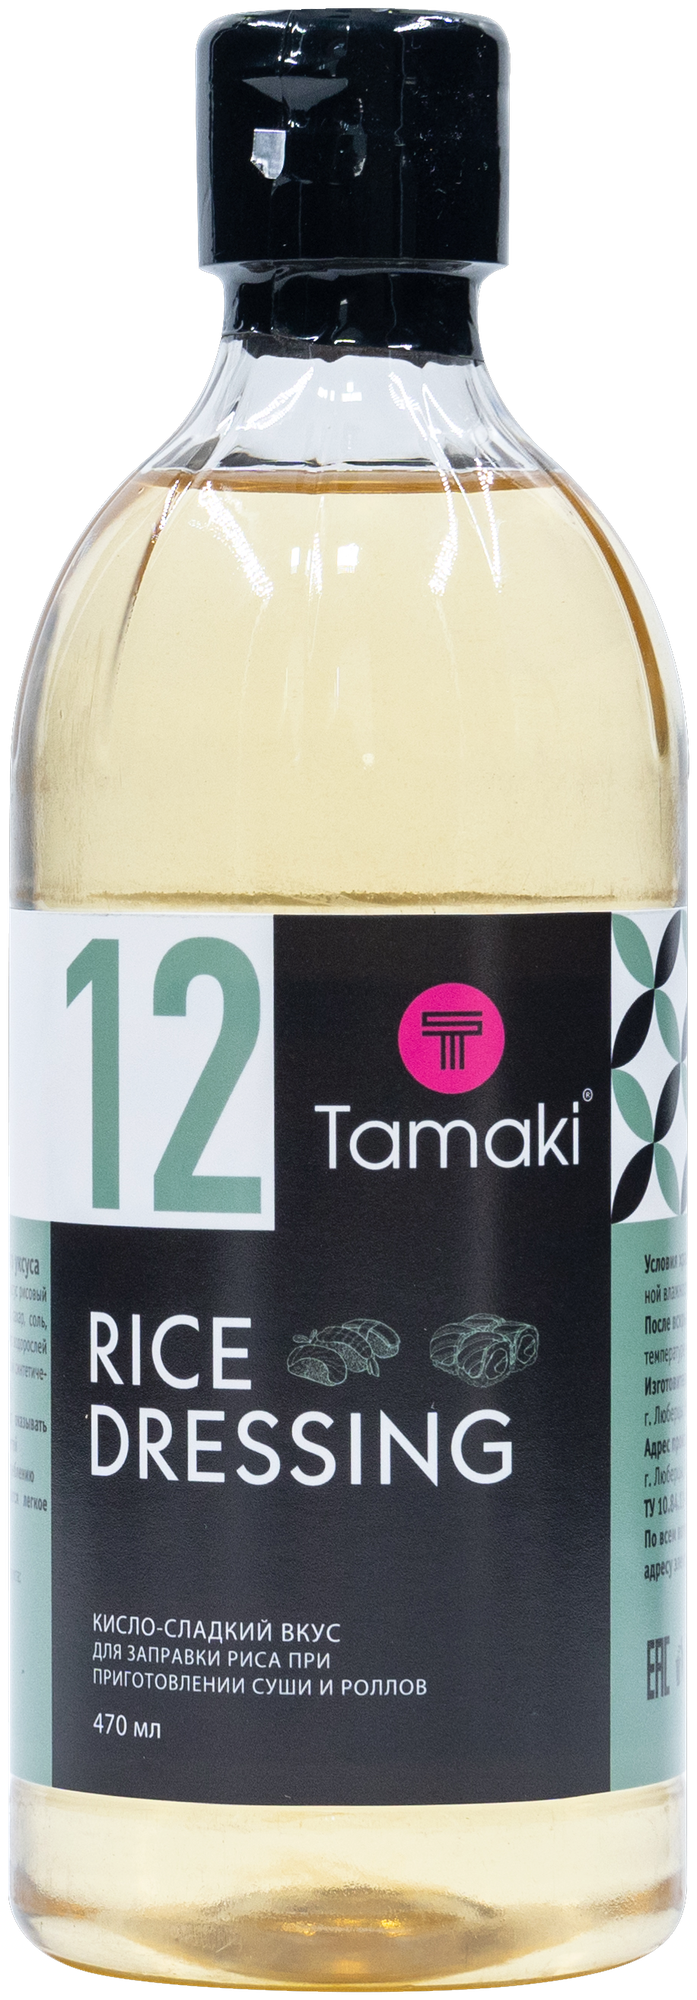 Заправка Tamaki для риса на основе рисового уксуса 470мл - фото №1